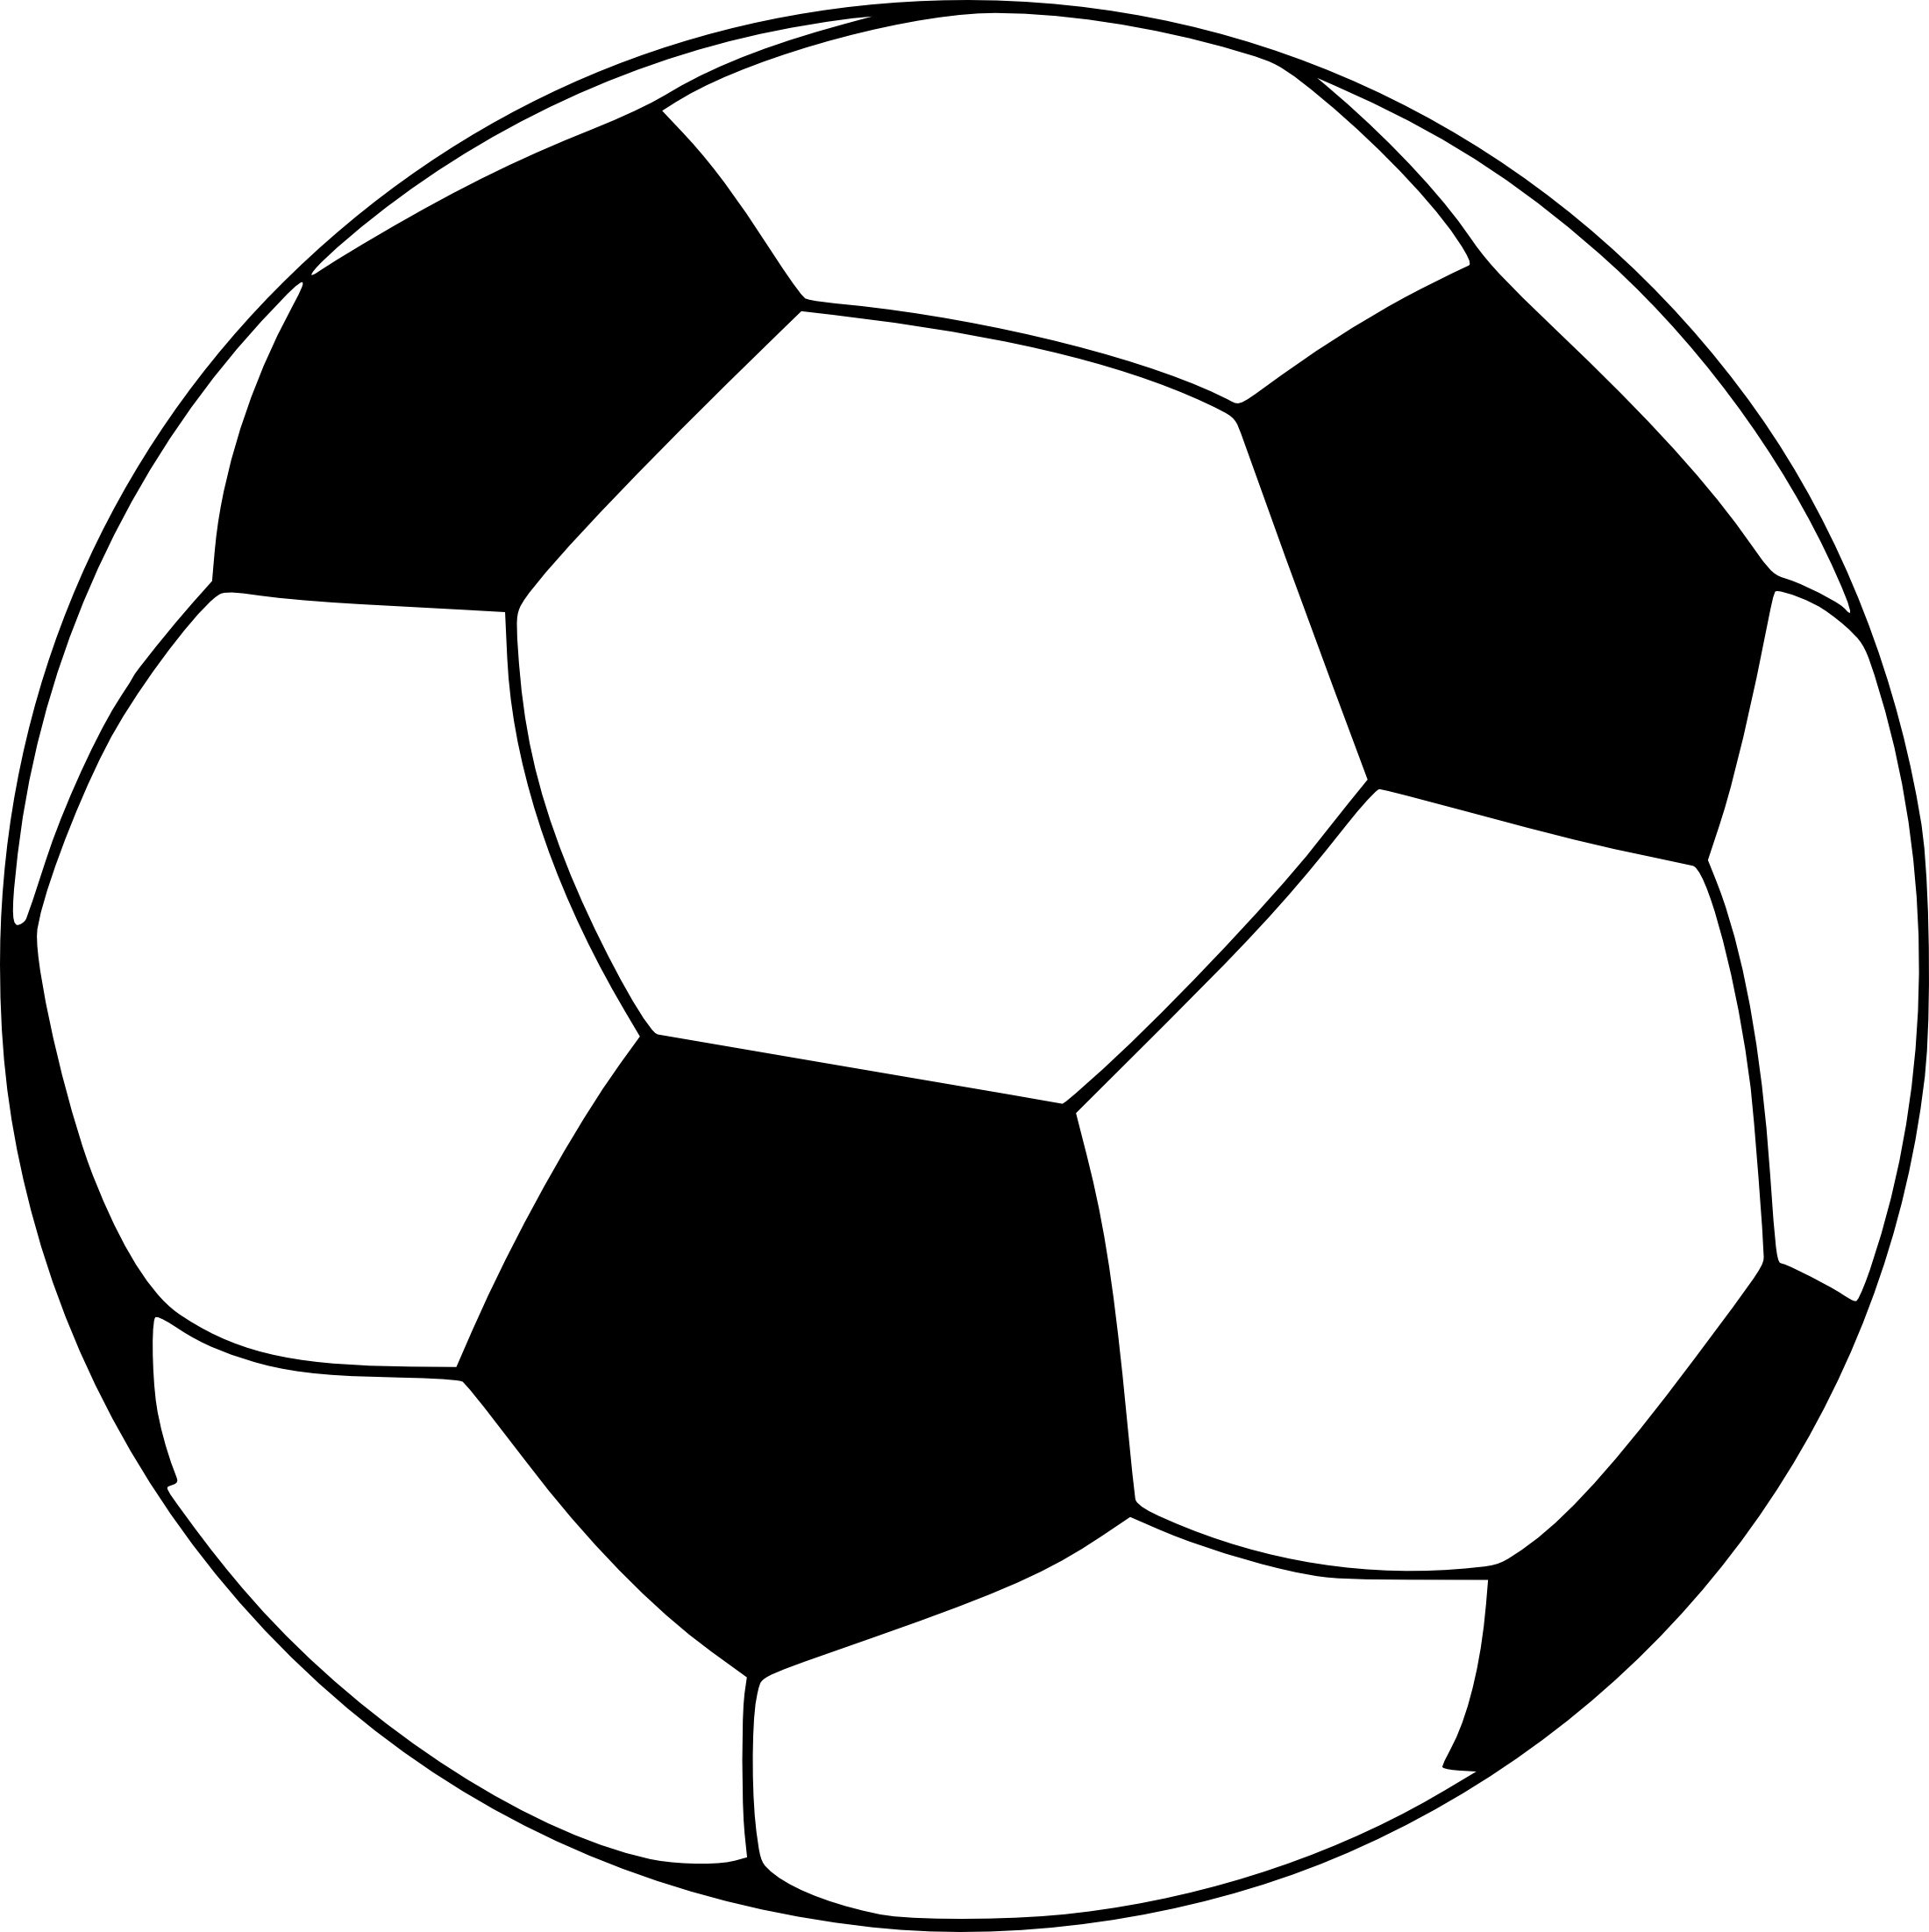 clipart image football ballon - photo #16